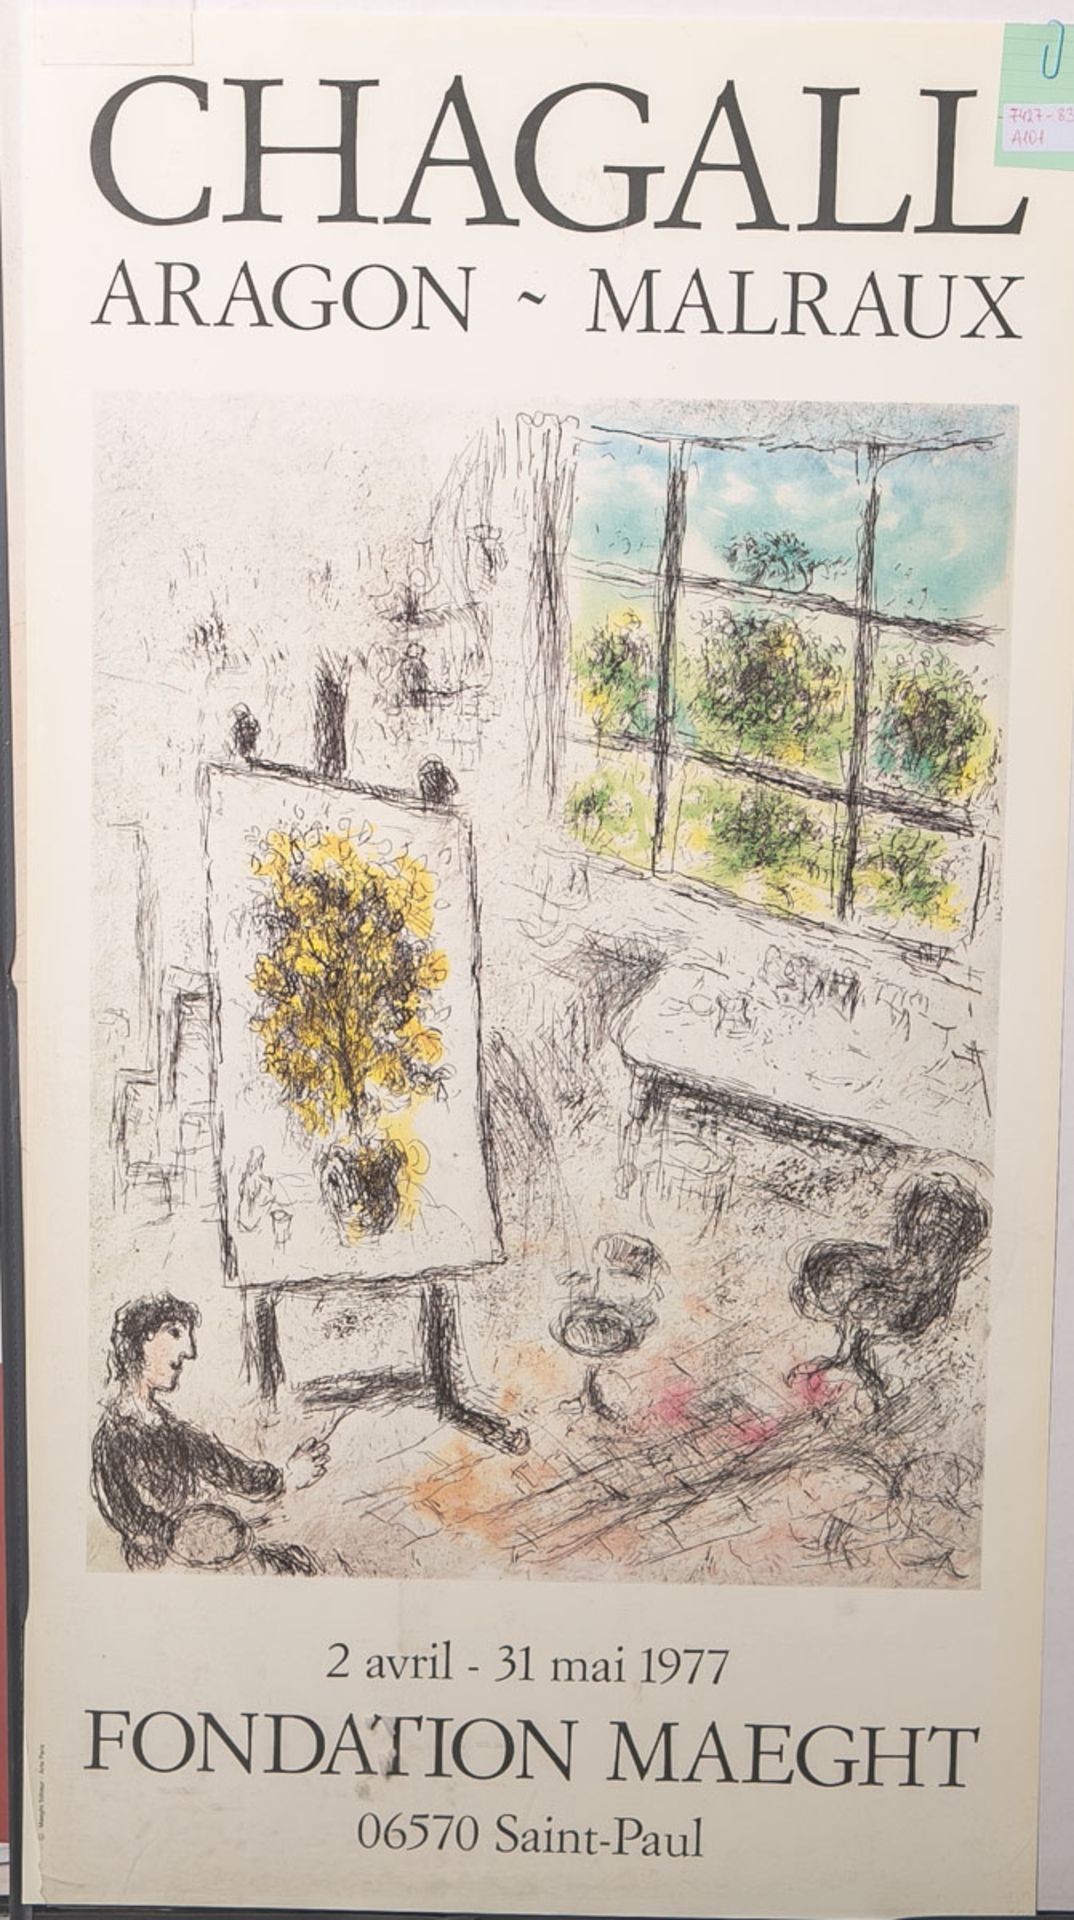 Chagall, Marc (1887 - 1985), Ausstellungsplakat für Chagall-Ausstellung "Aragon - Malraux" in der